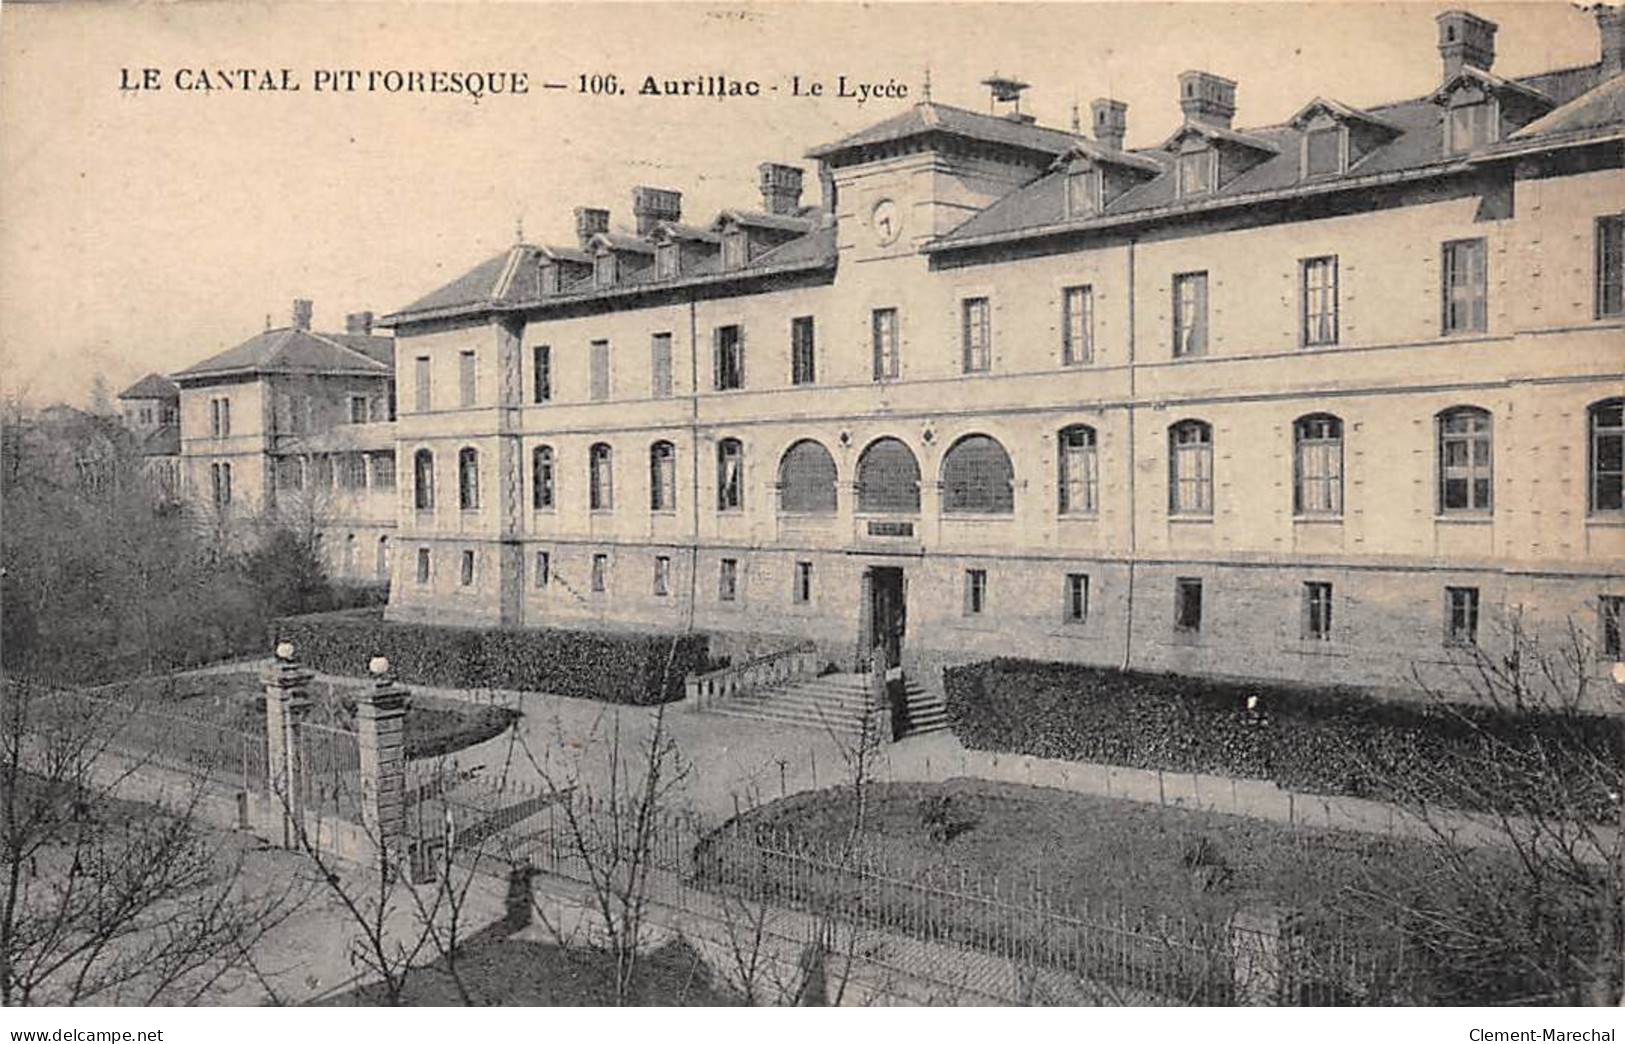 AURILLAC - Le Lycée - Très Bon état - Aurillac